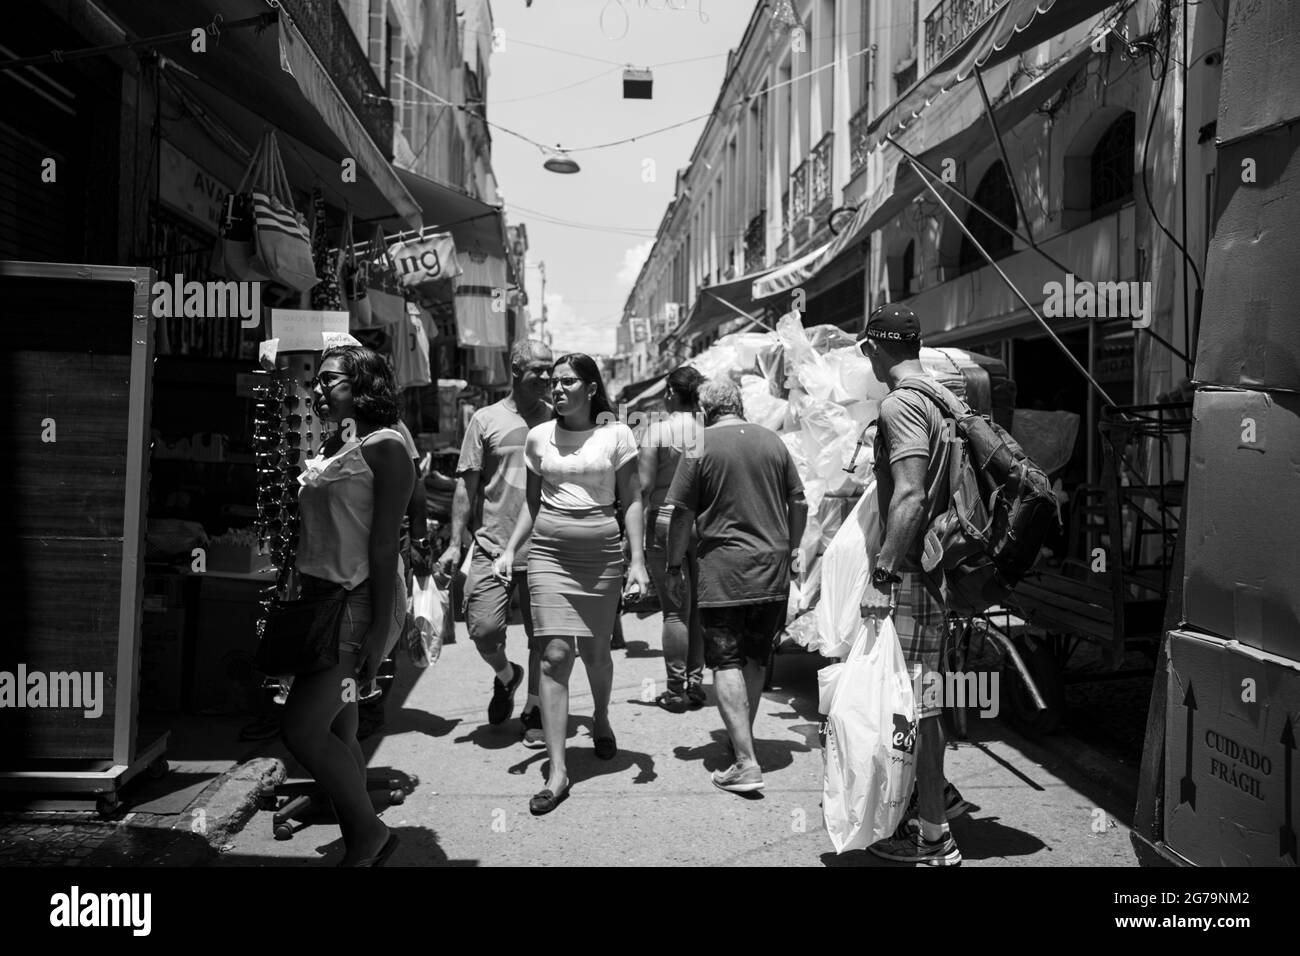 Le strade del mercato di Saara, luogo della gente nella città vecchia per fare shopping. Rio de janeiro, Brasile Foto Stock